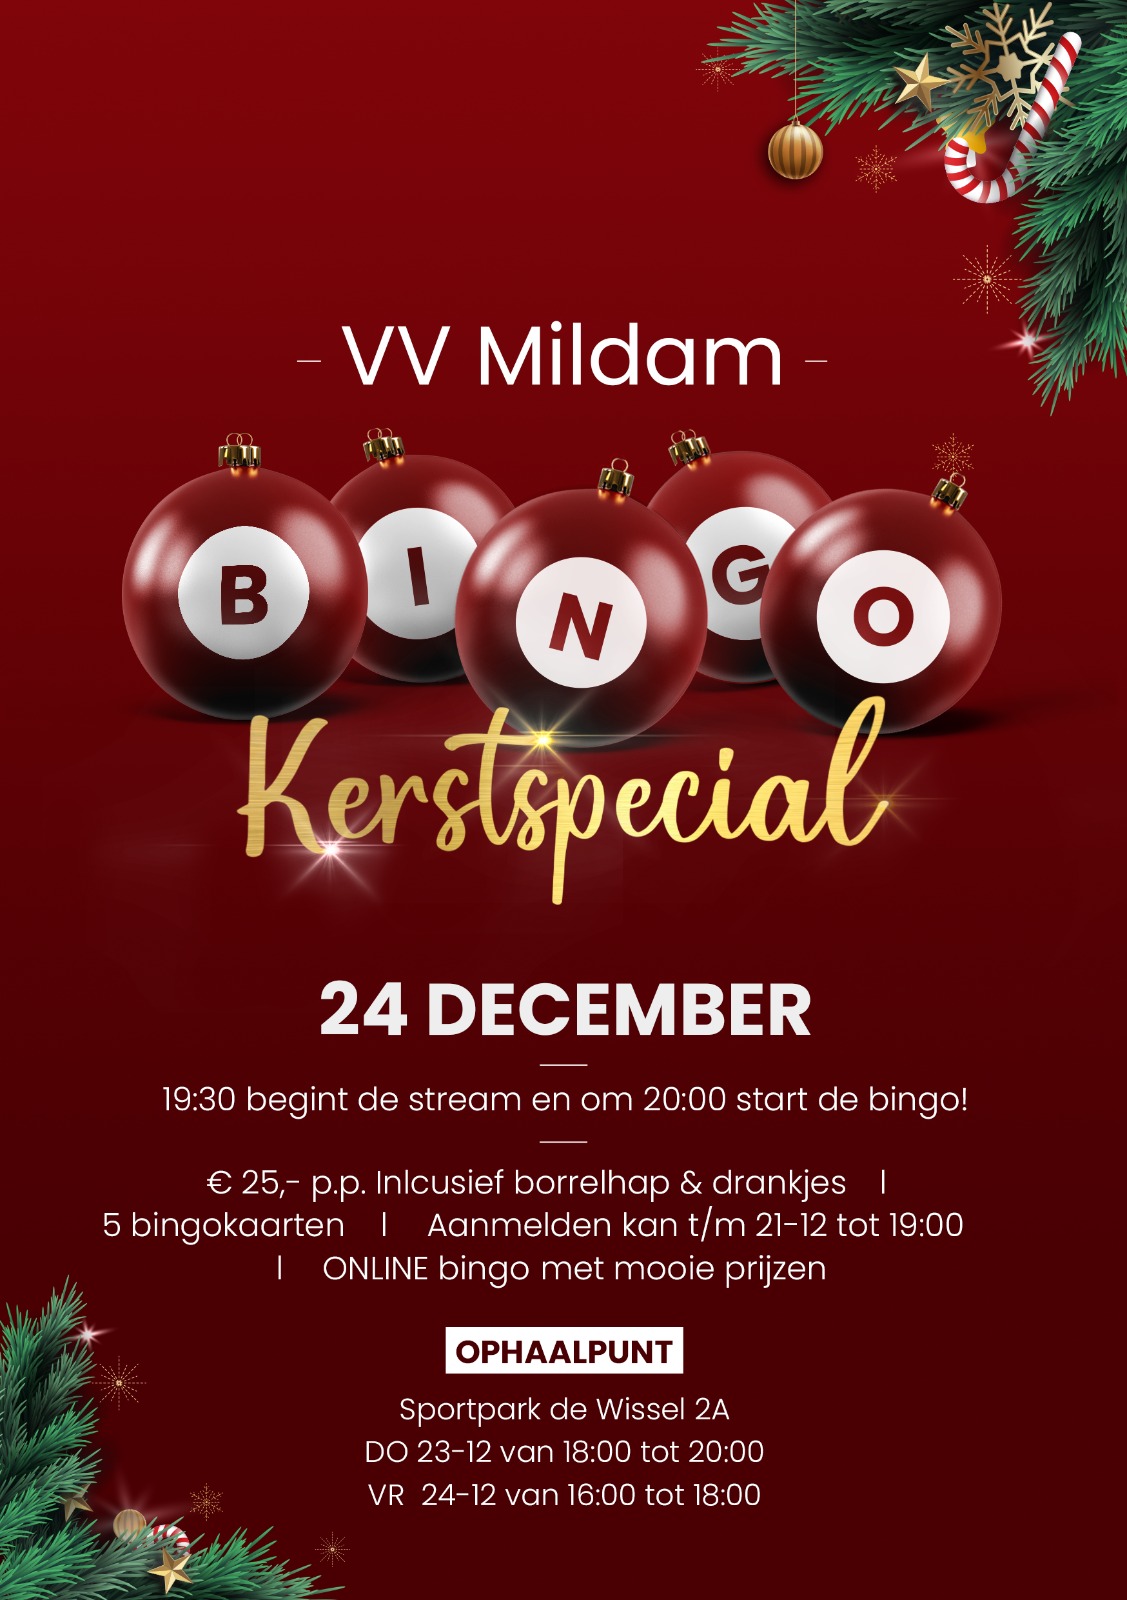 Mildam online kerst bingo